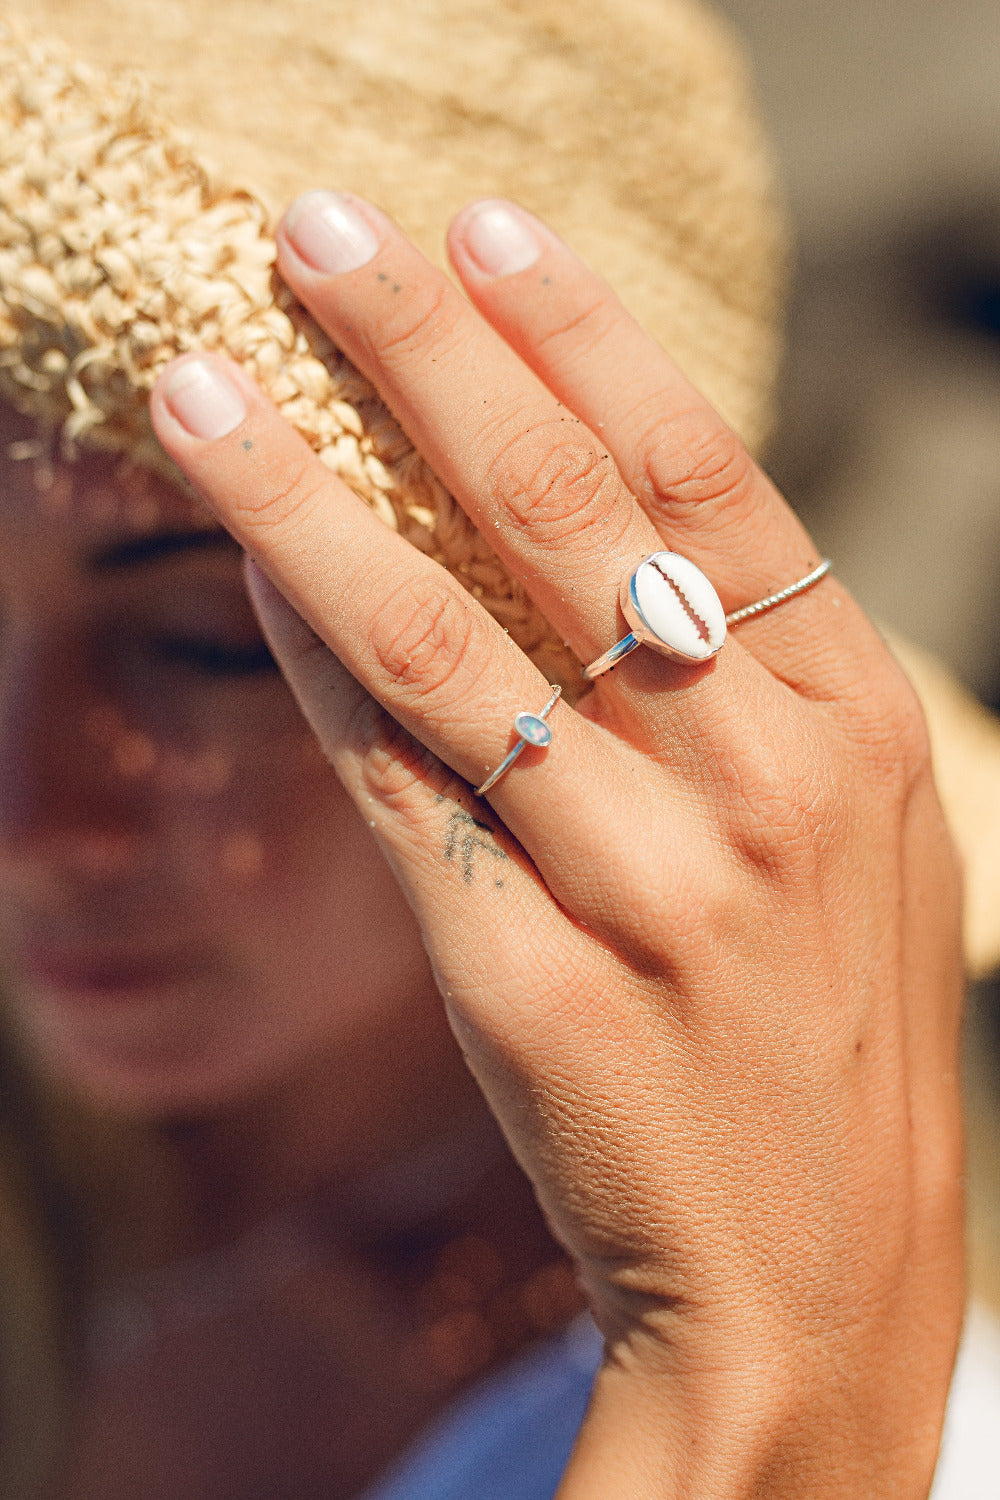 Handmade with love | VERLAN Jewellery | Fairfashion | Handgemachte Ringe im Boho Look aus Bali | Fair und nachhaltig handgefertigter Schmuck | Silberring mit Opal | 925 Silber | SHELL Ring